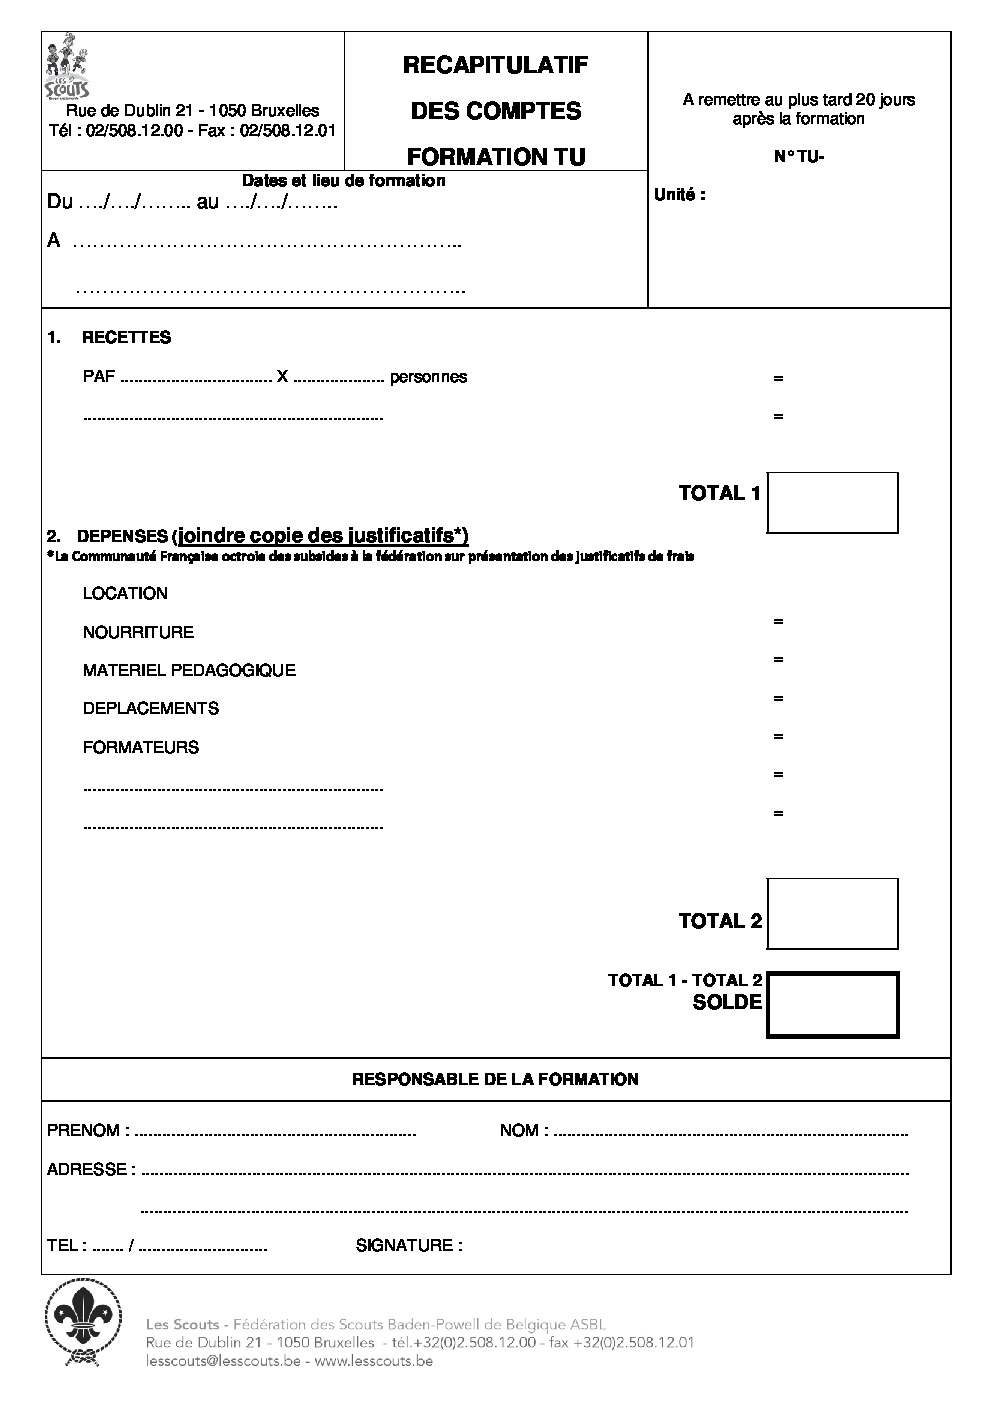 kitTU_00_recapitulatif_comptes.pdf